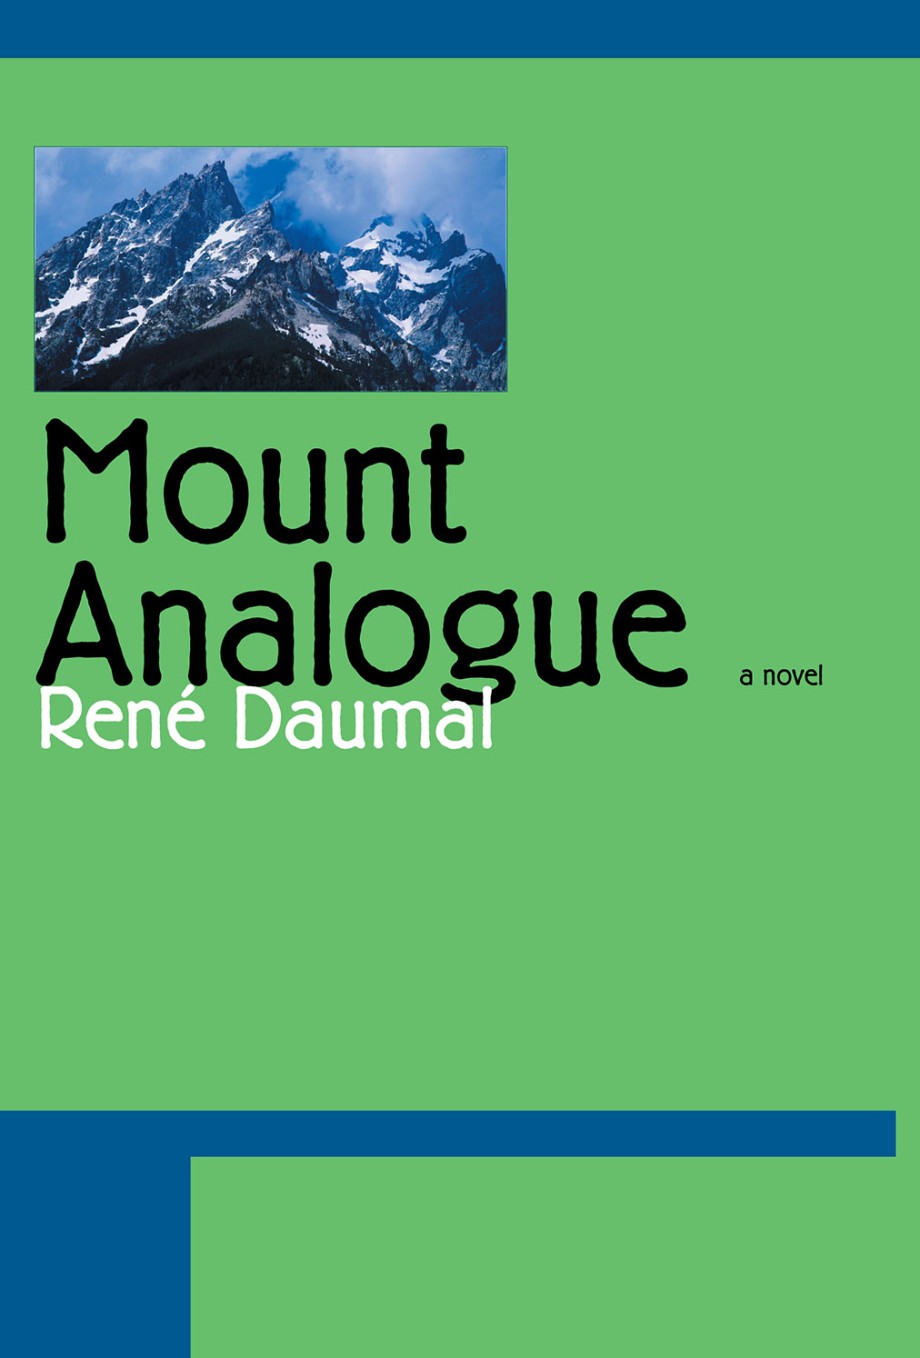 Mount Analogue A Novel of Symbolically Authentic Non-Euclidean Adventures in Mountain Climbing